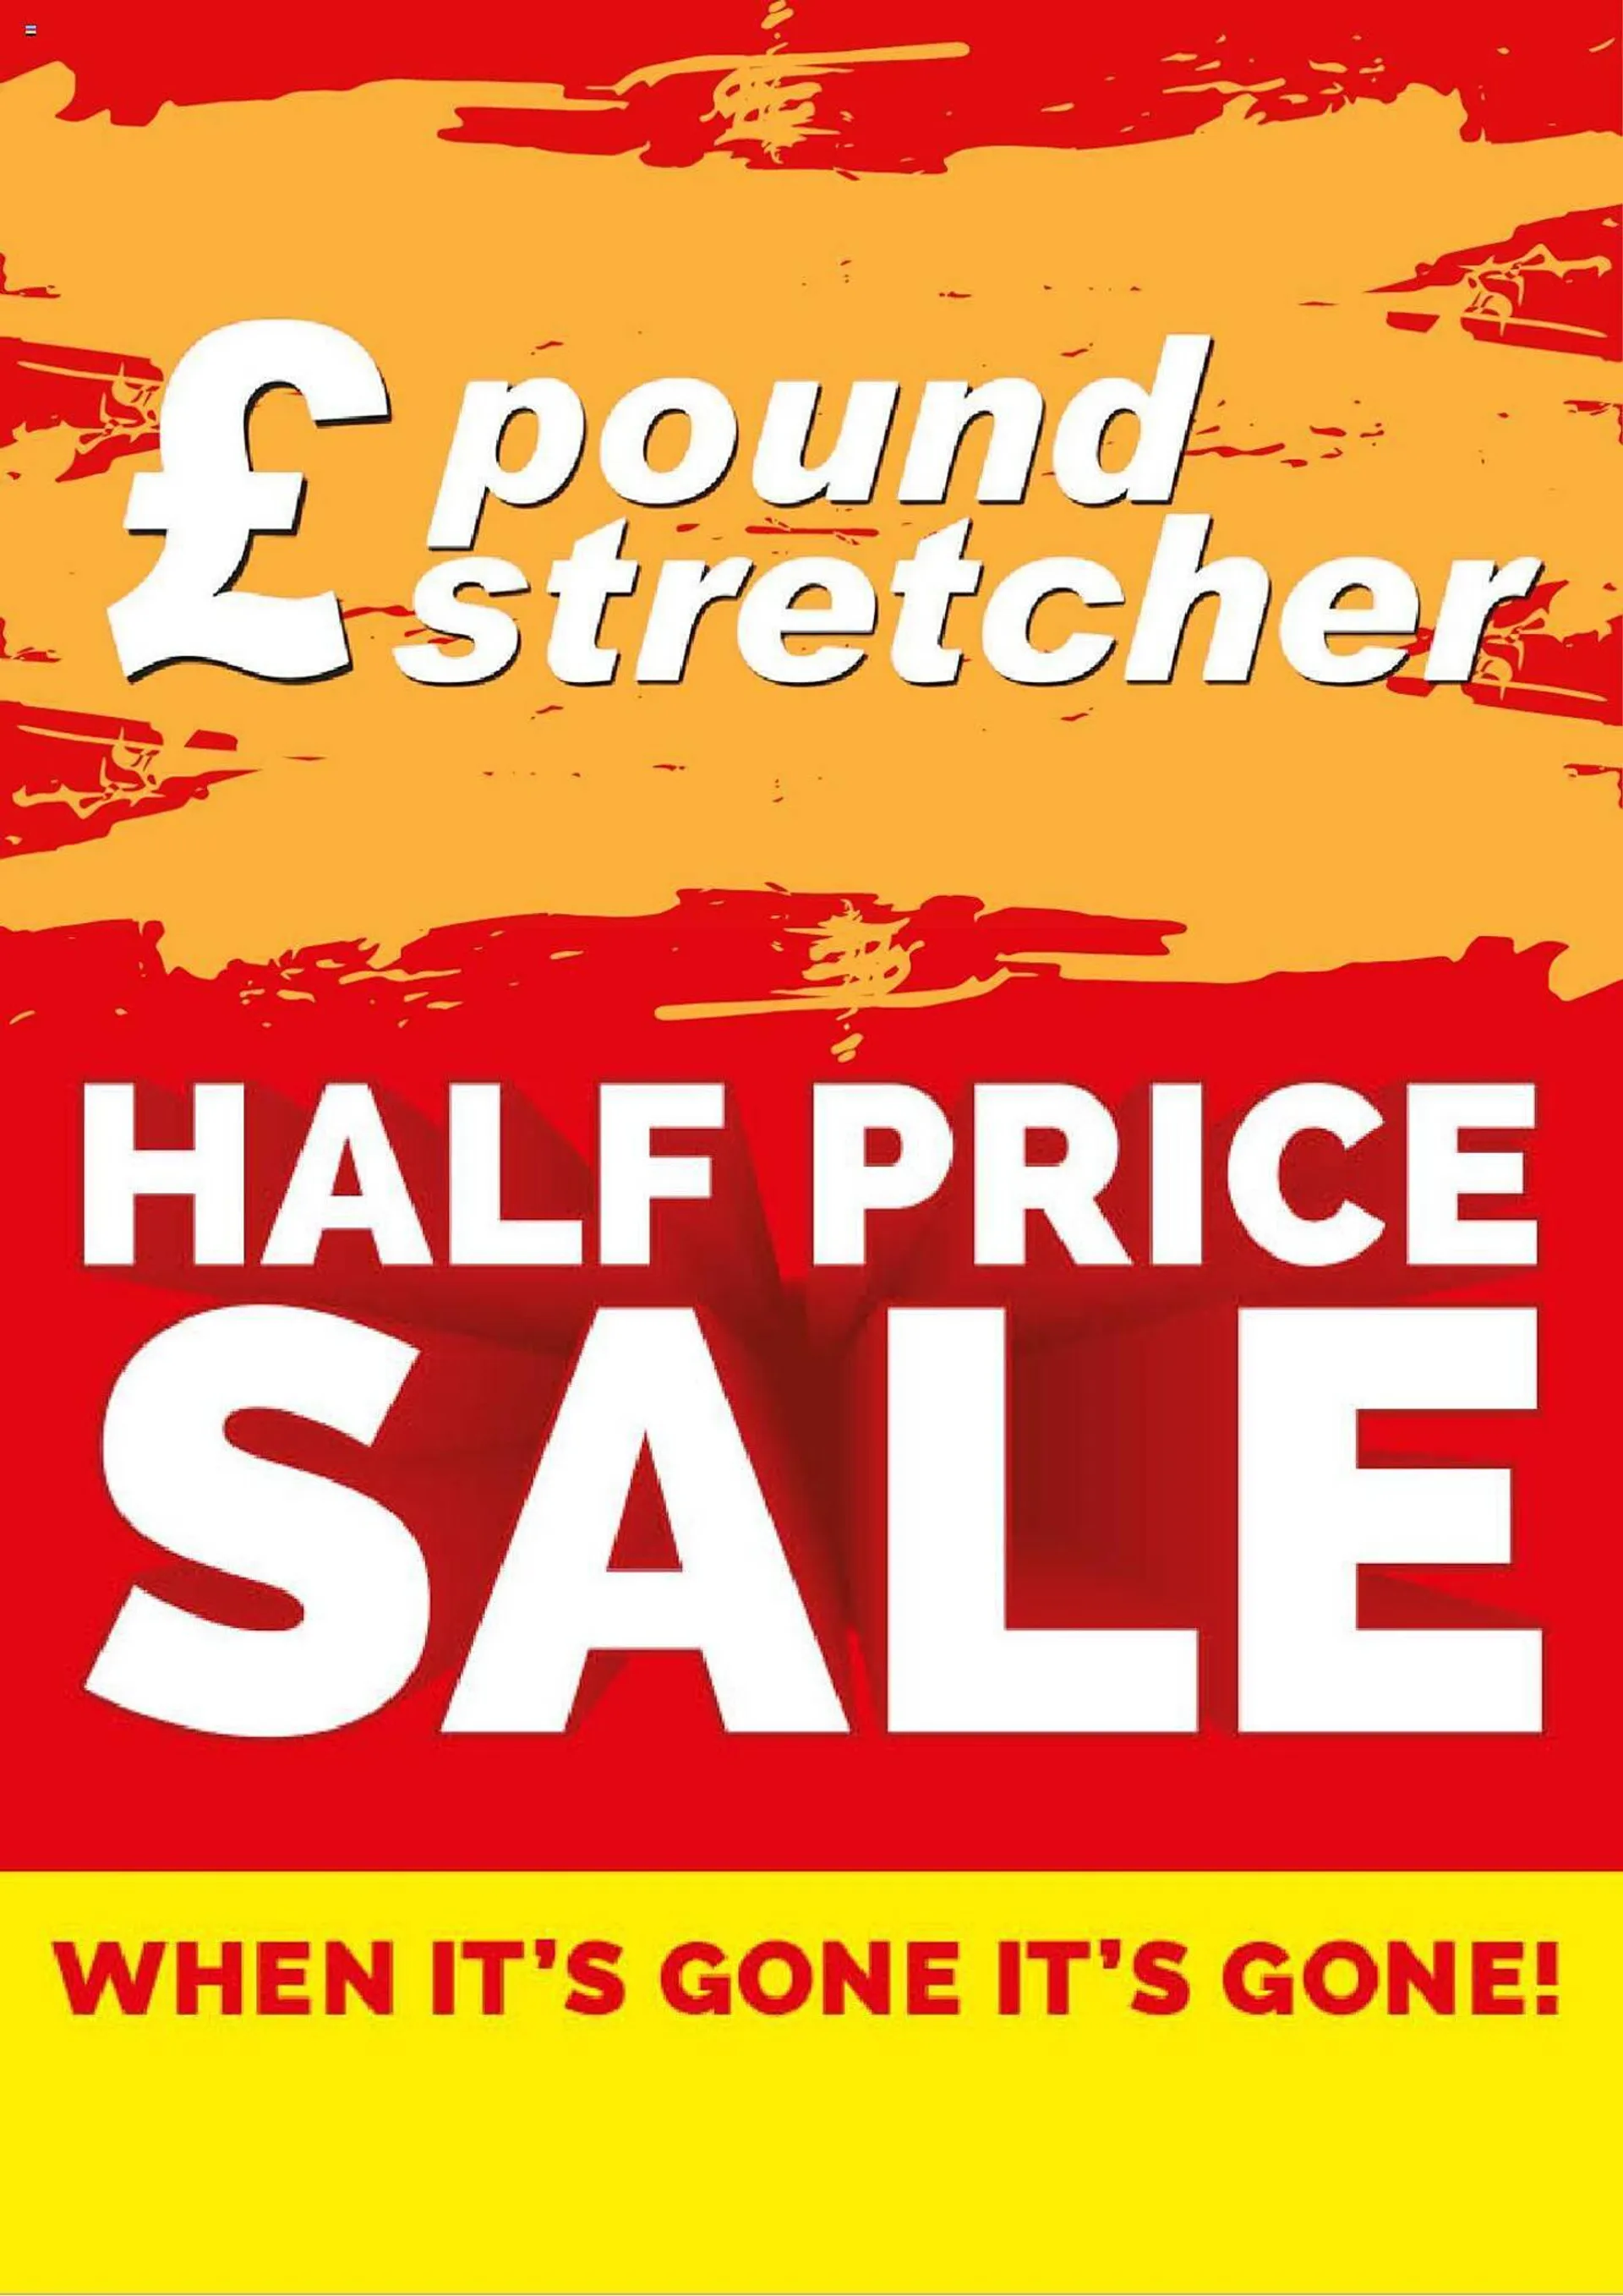 Poundstretcher leaflet - 1